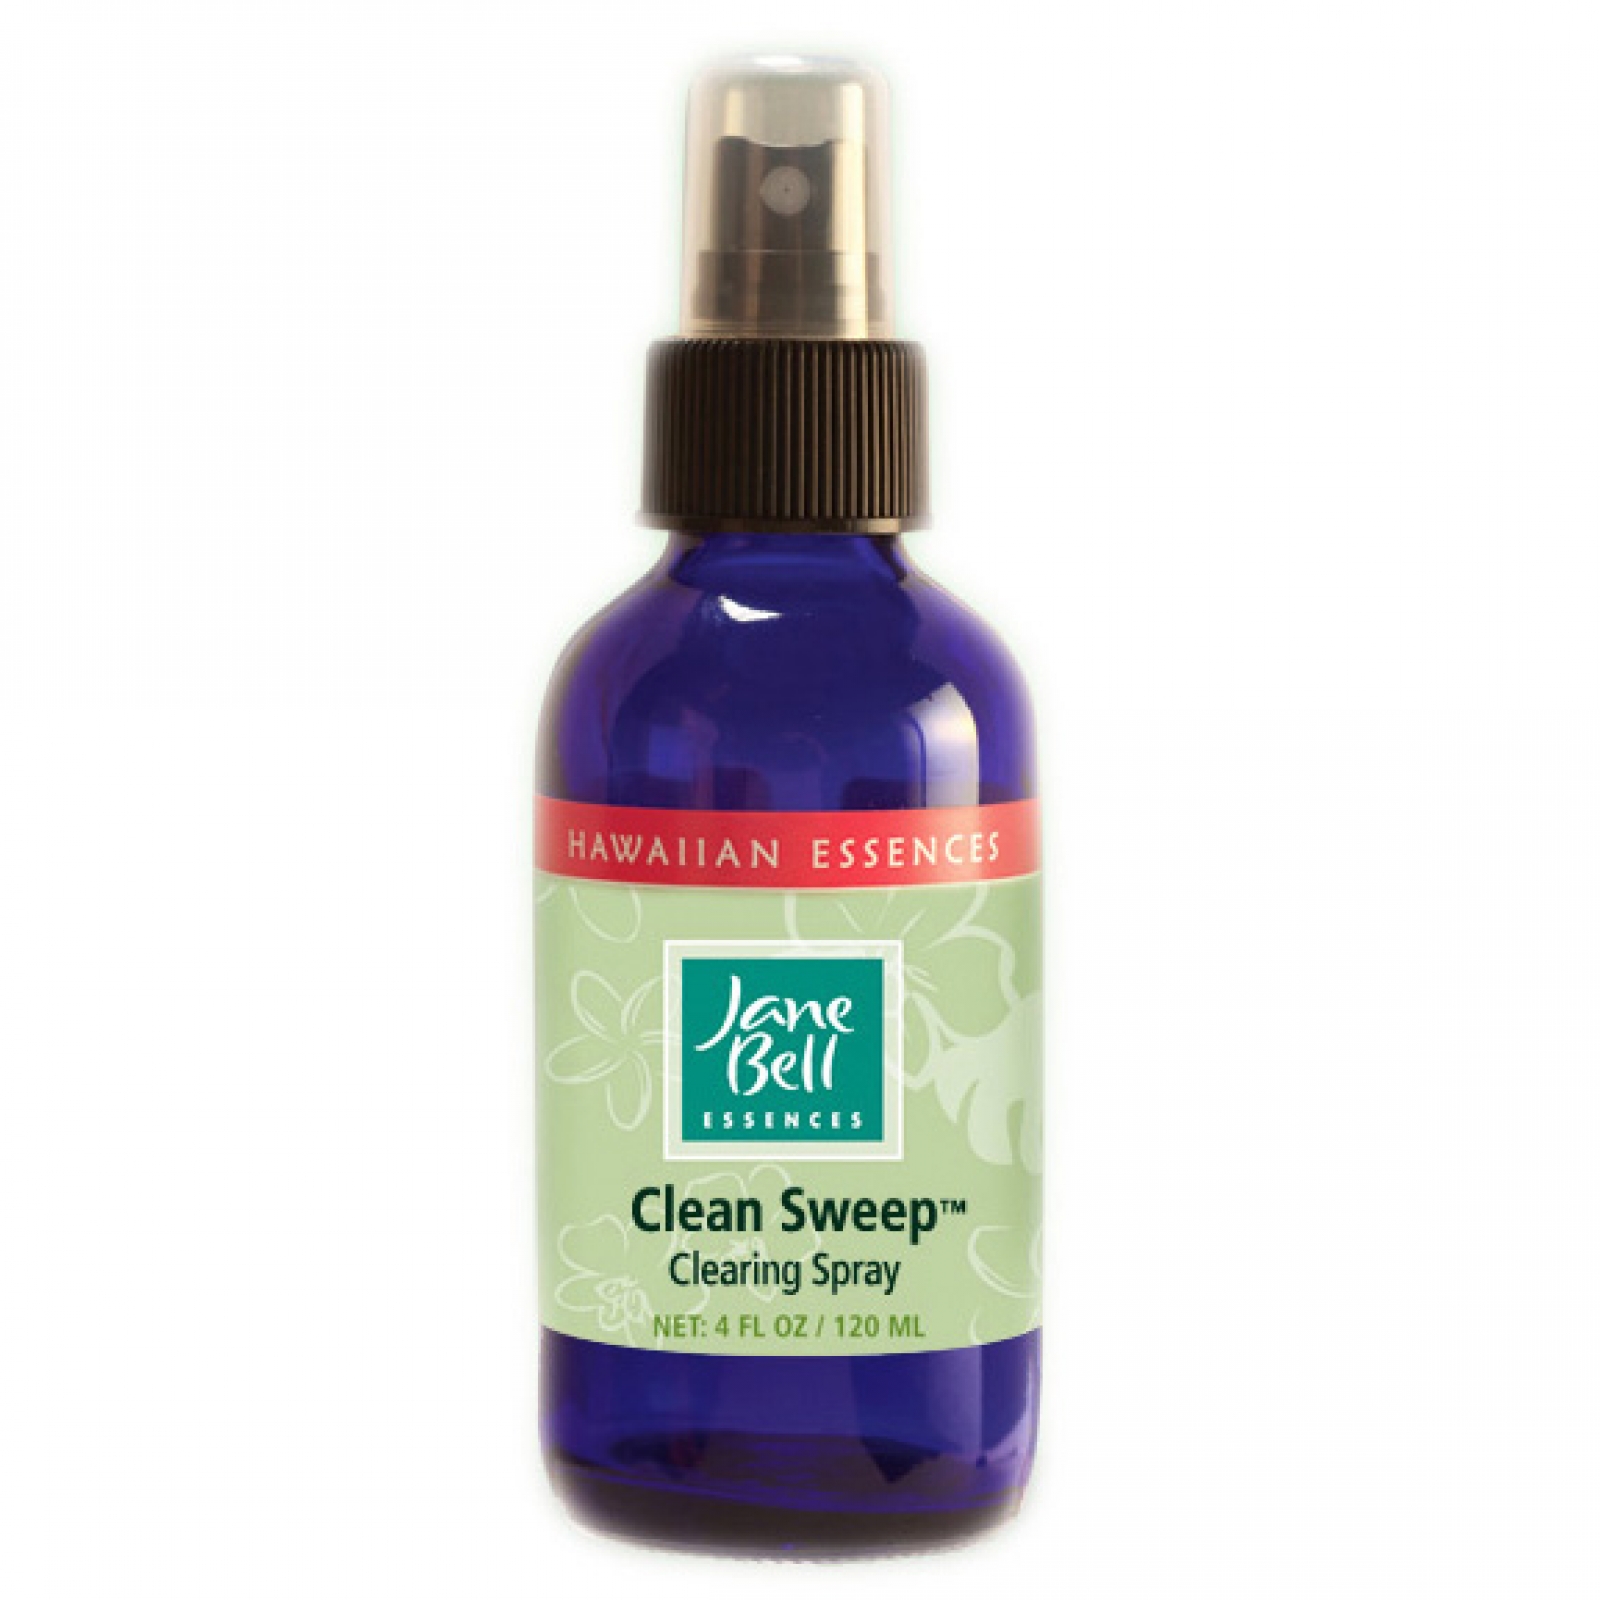 クリーンスイープスプレー(120ml)[Clean Sweep Spray]